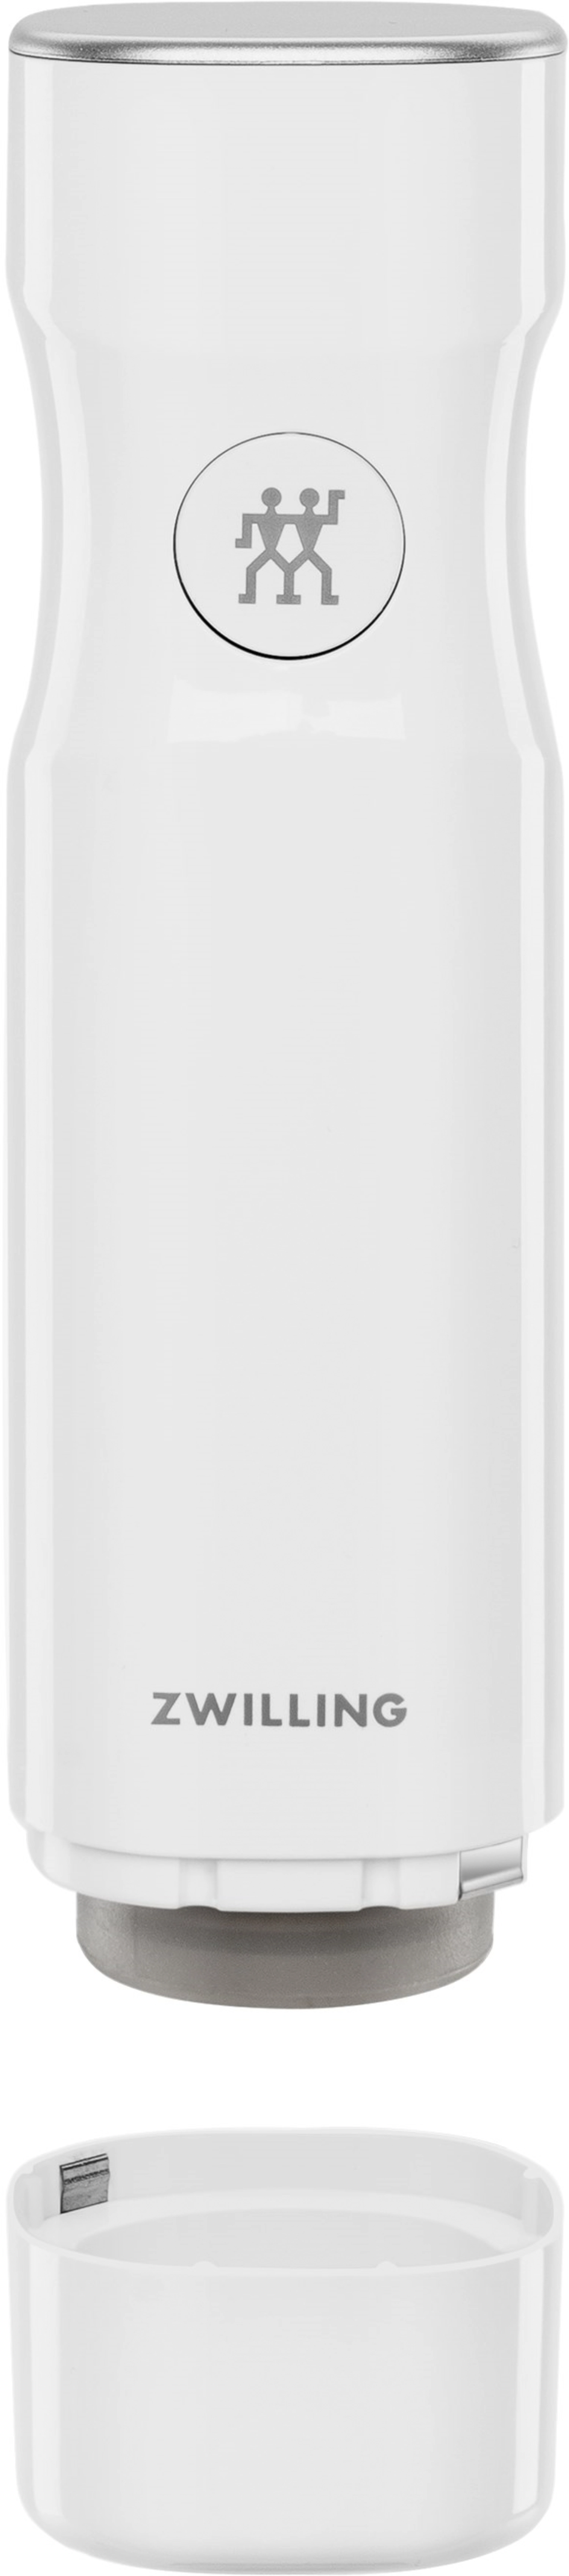 Pompe à vide avec usb, 5x5x19 cm, blanc